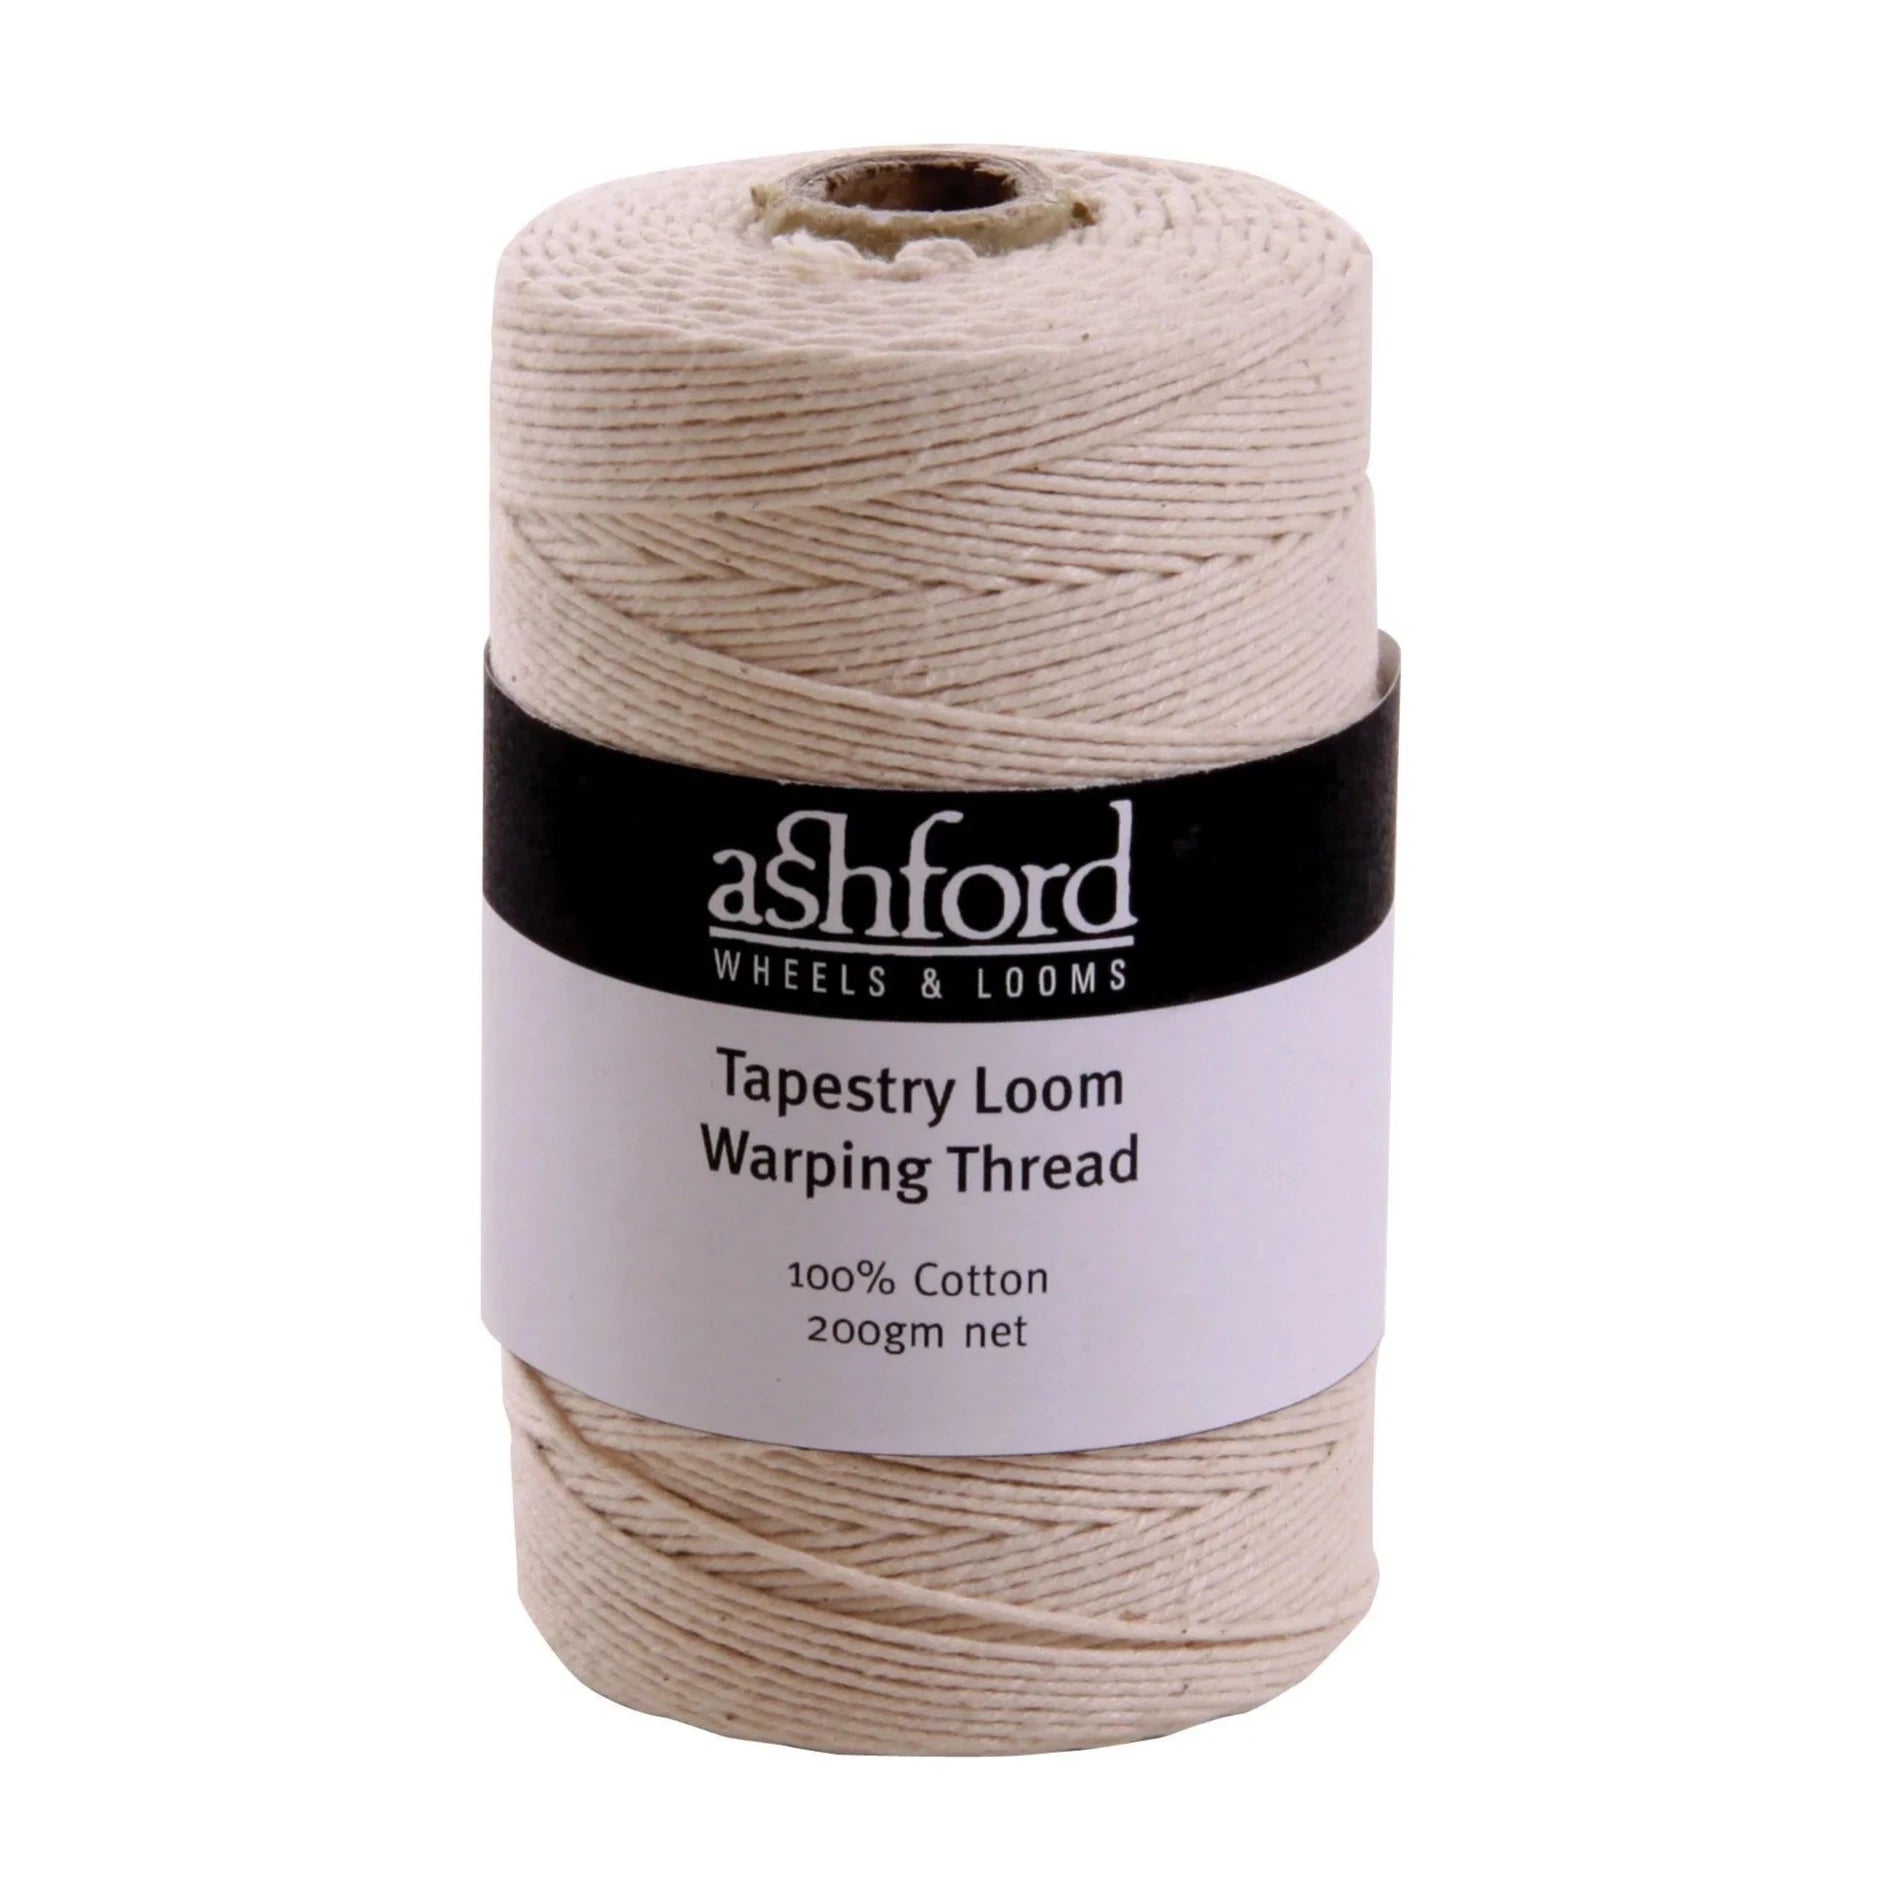 Ashford Tapestry Loom Warping Thread - Ashford - The Little Yarn Store